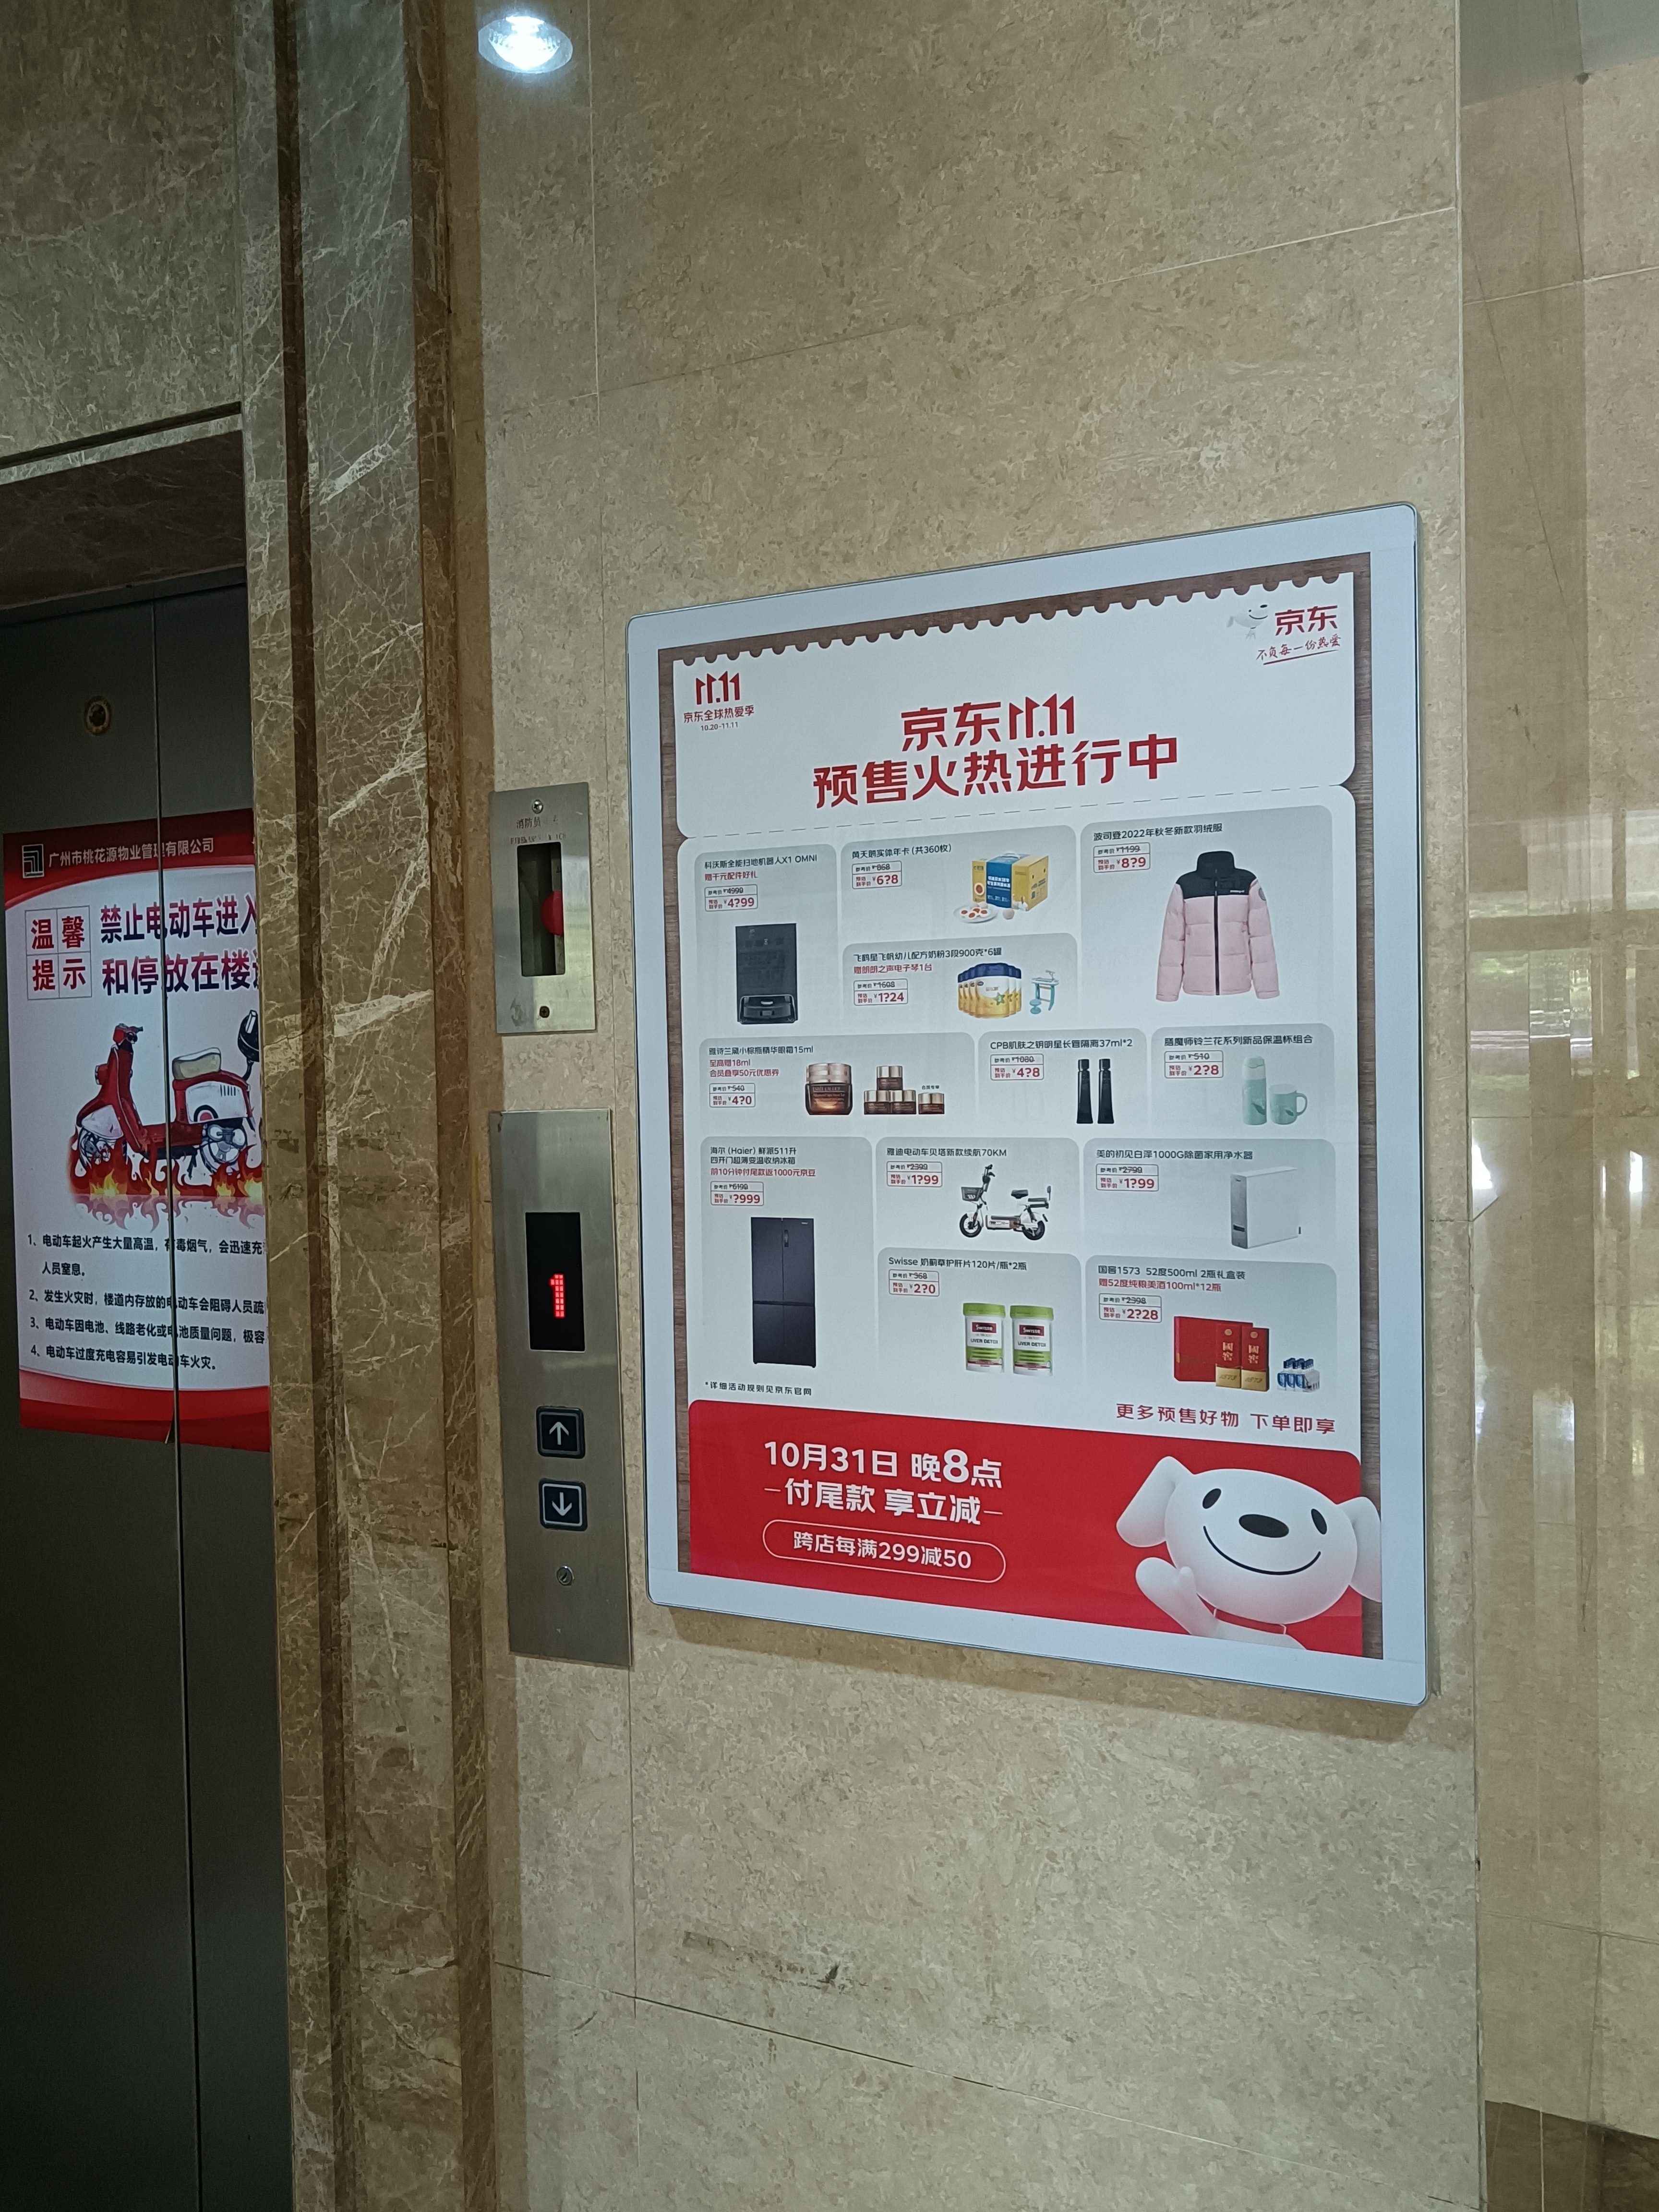 广州市电梯框架广告找谁做厂家广州天河区社区写字楼电梯框架广告找谁做【广州玉贵广告有限公司】